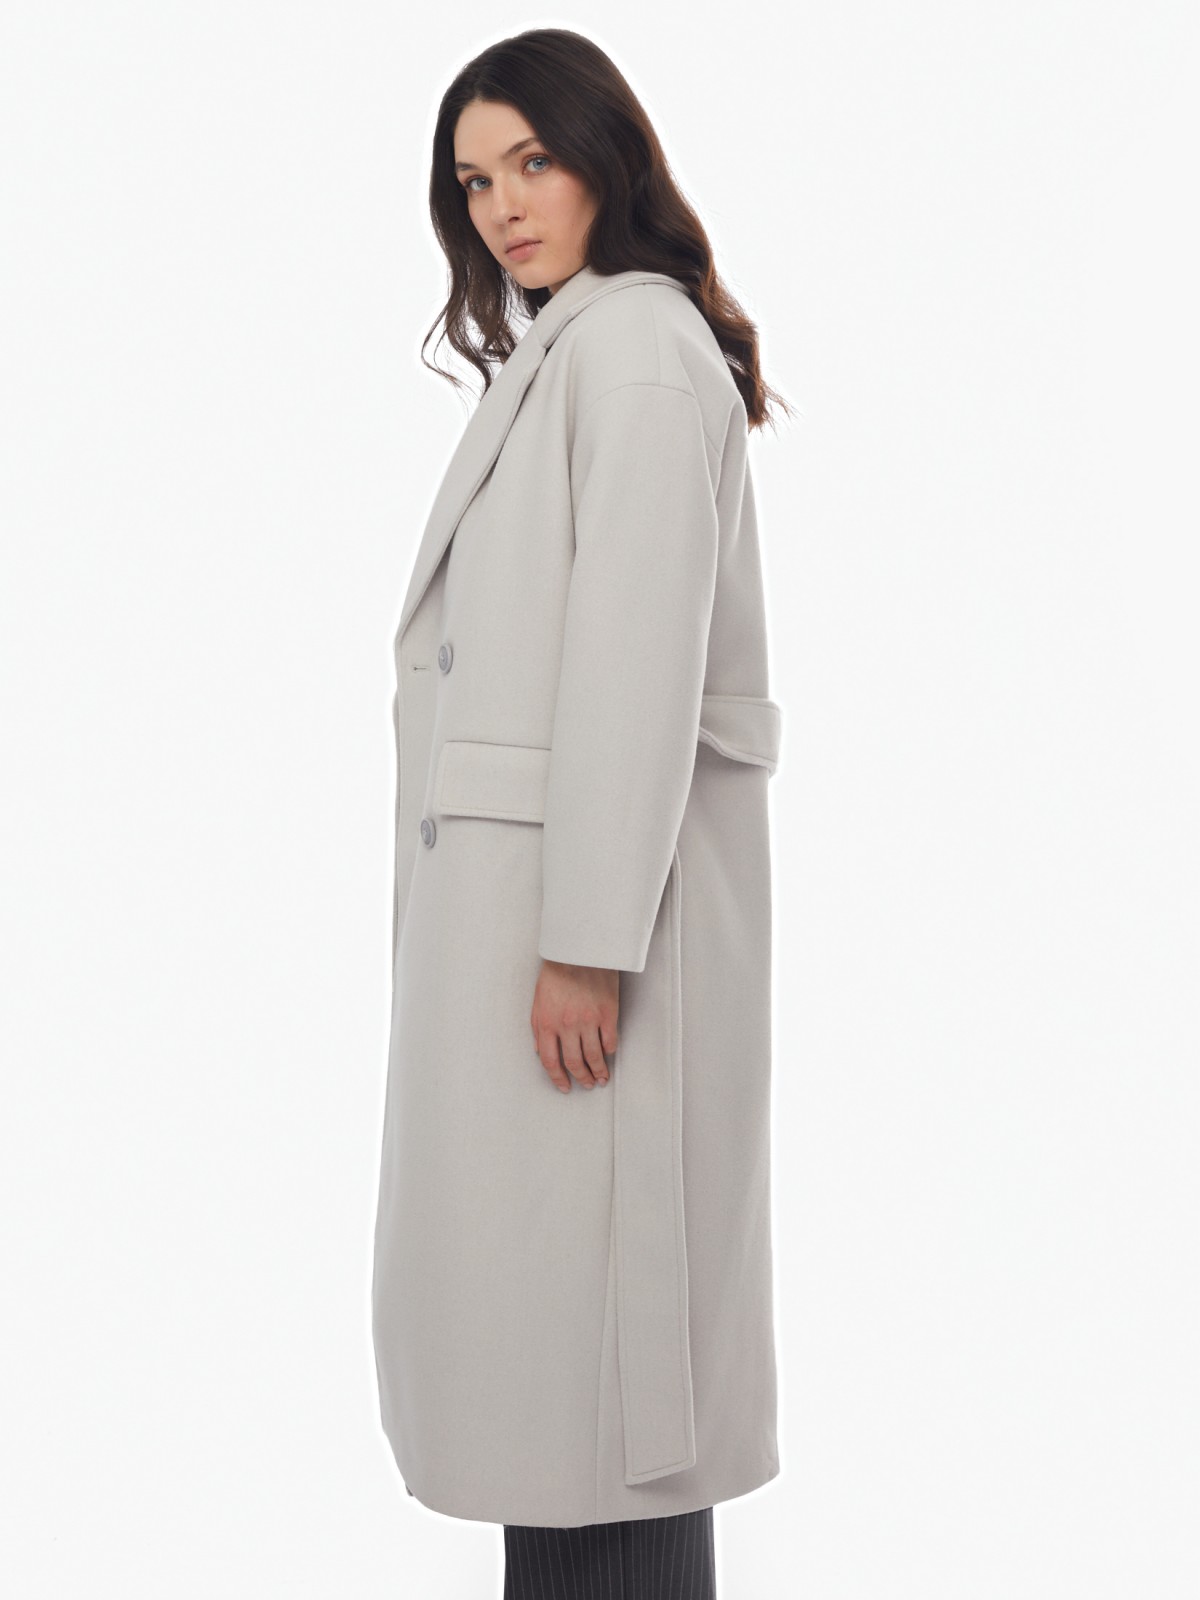 Длинное пальто оверсайз силуэта без утеплителя на пуговицах с поясом zolla 024125857064, цвет светло-серый, размер XS - фото 4